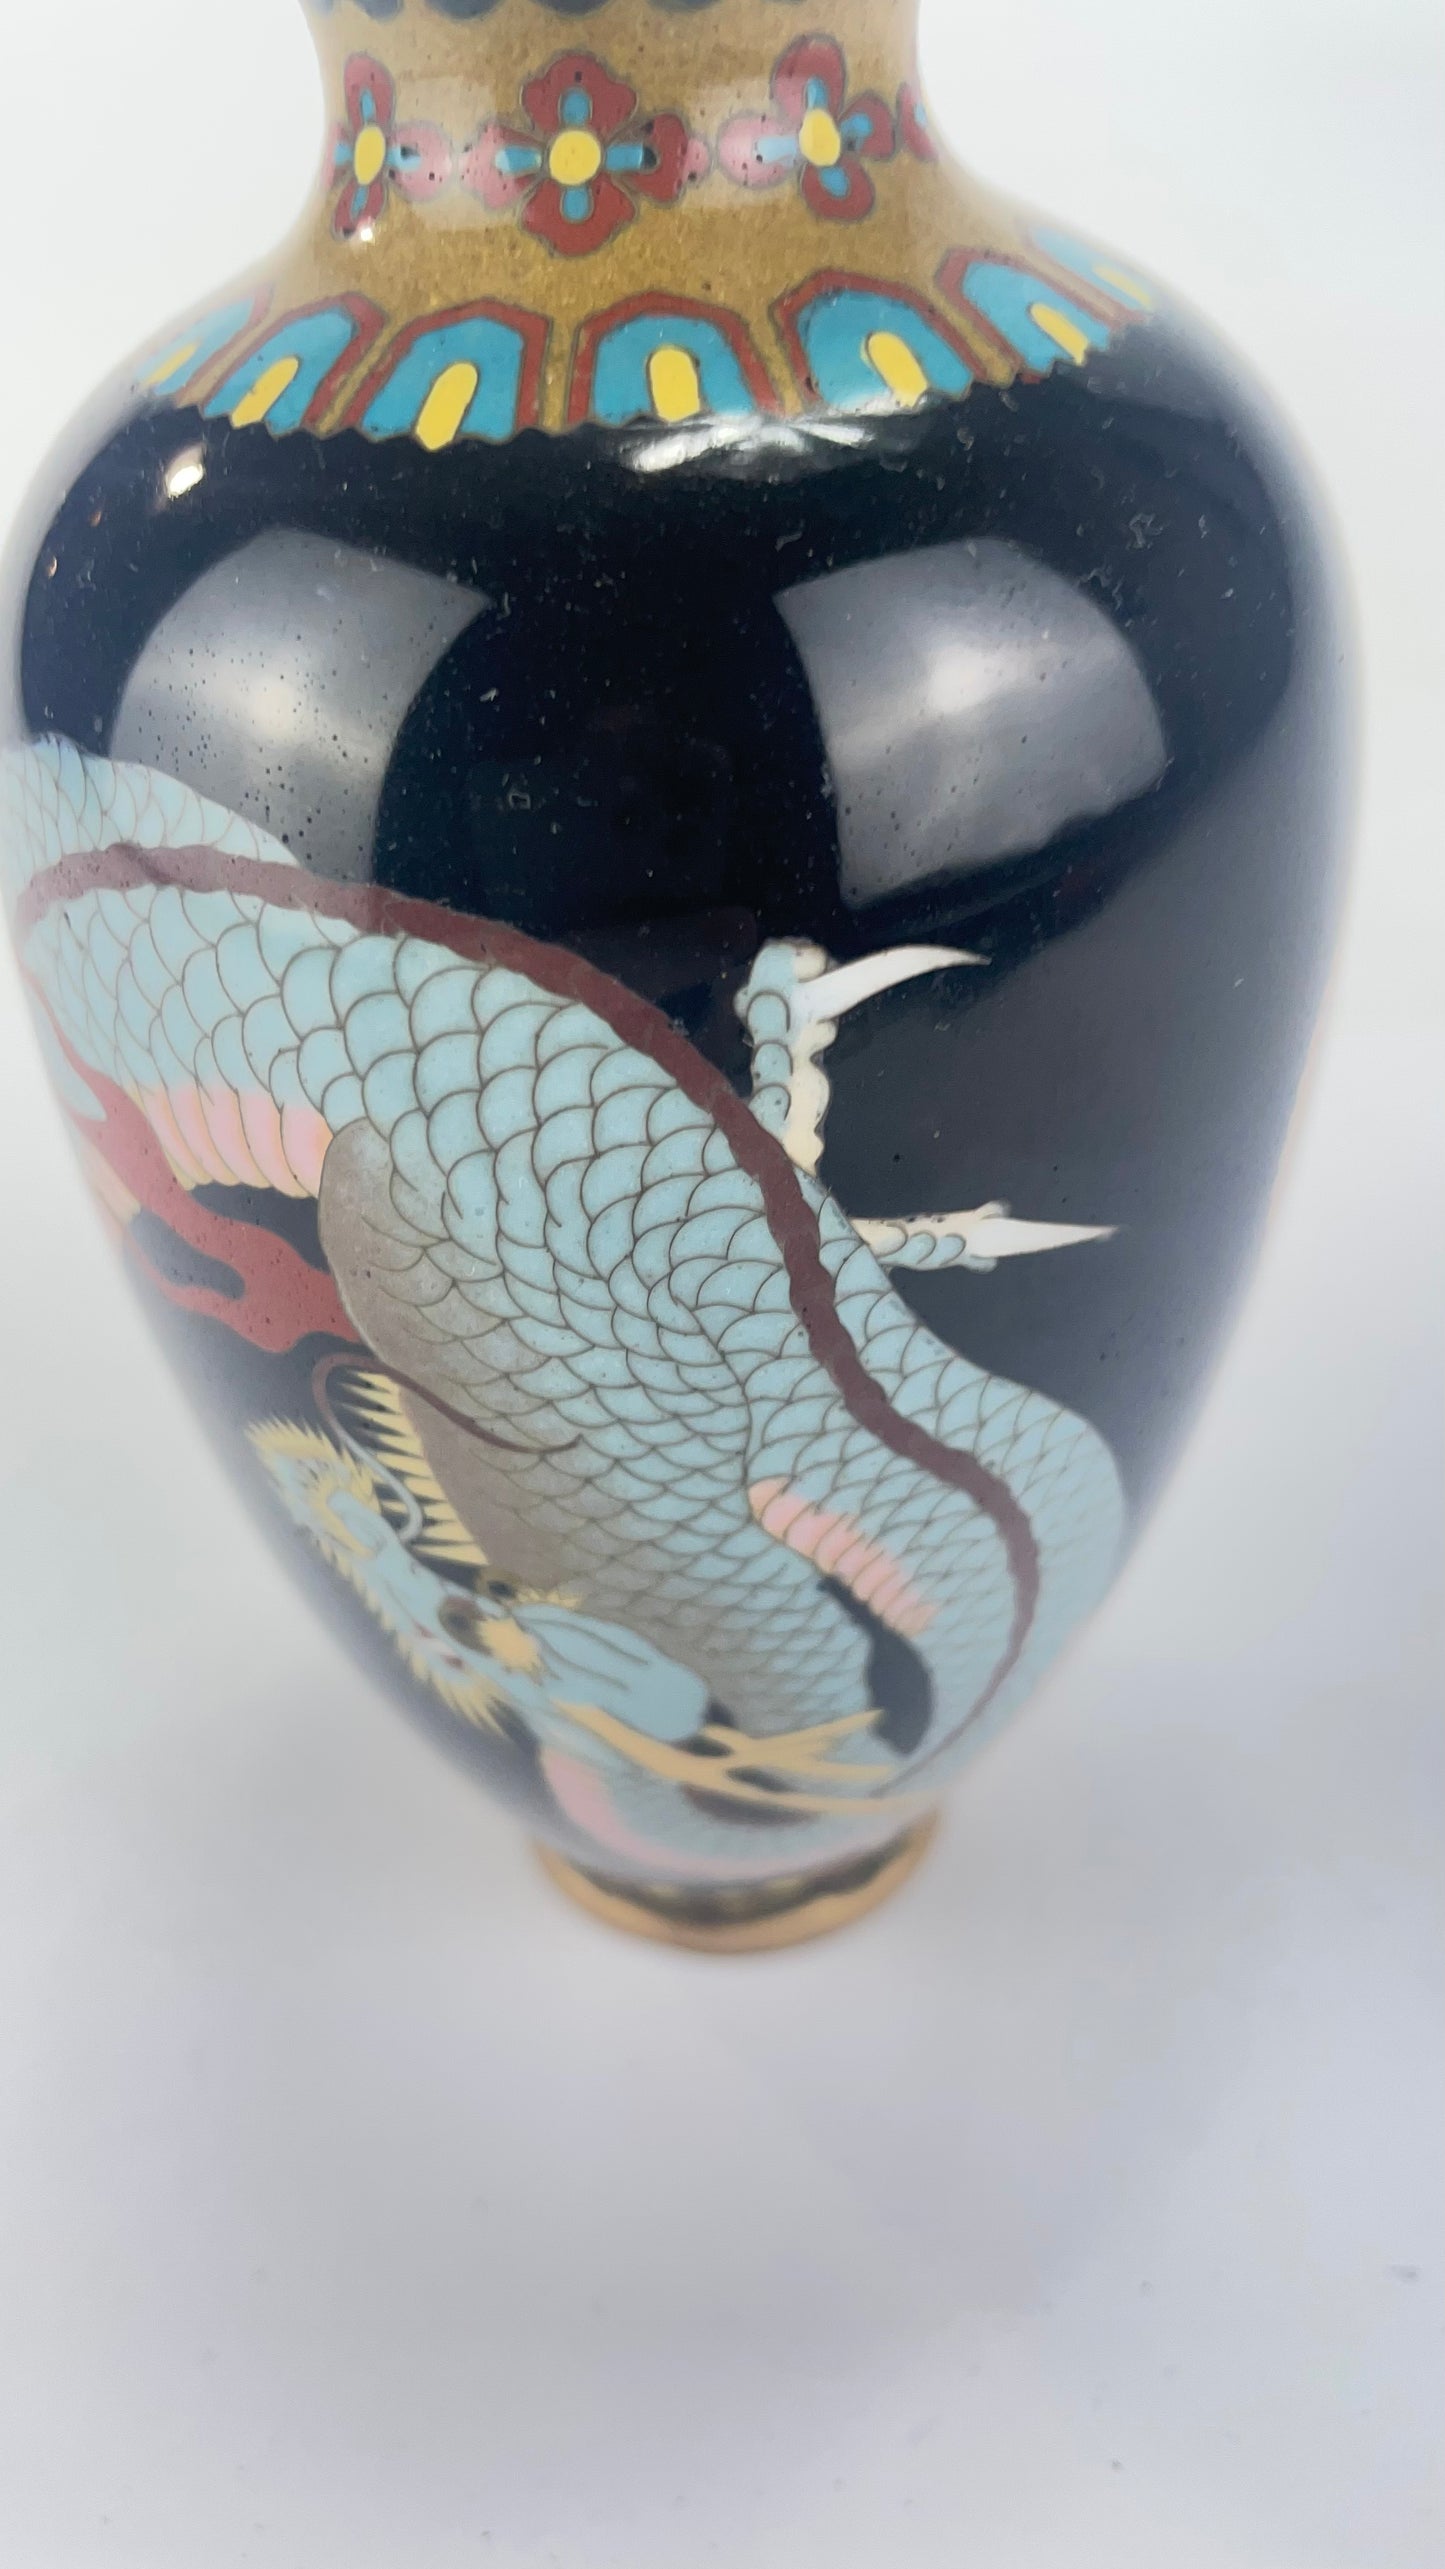 Antique Japanese Meiji Era (c1880) Cloisonné Vase Blue dragon 5”